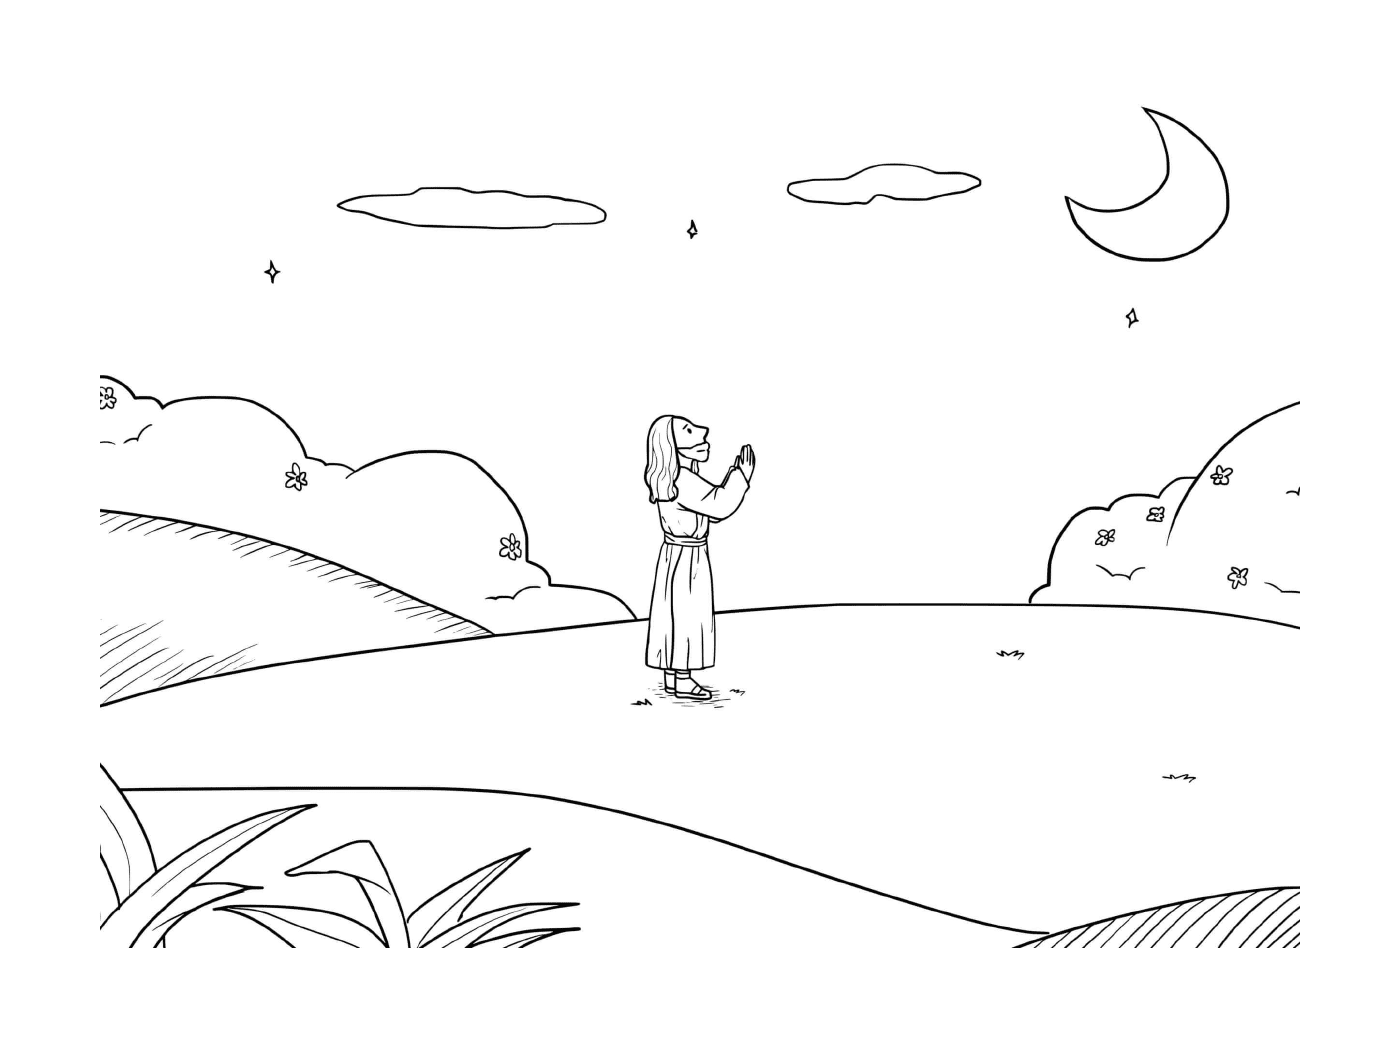  Camminando sull'acqua, donna in piedi in un campo 